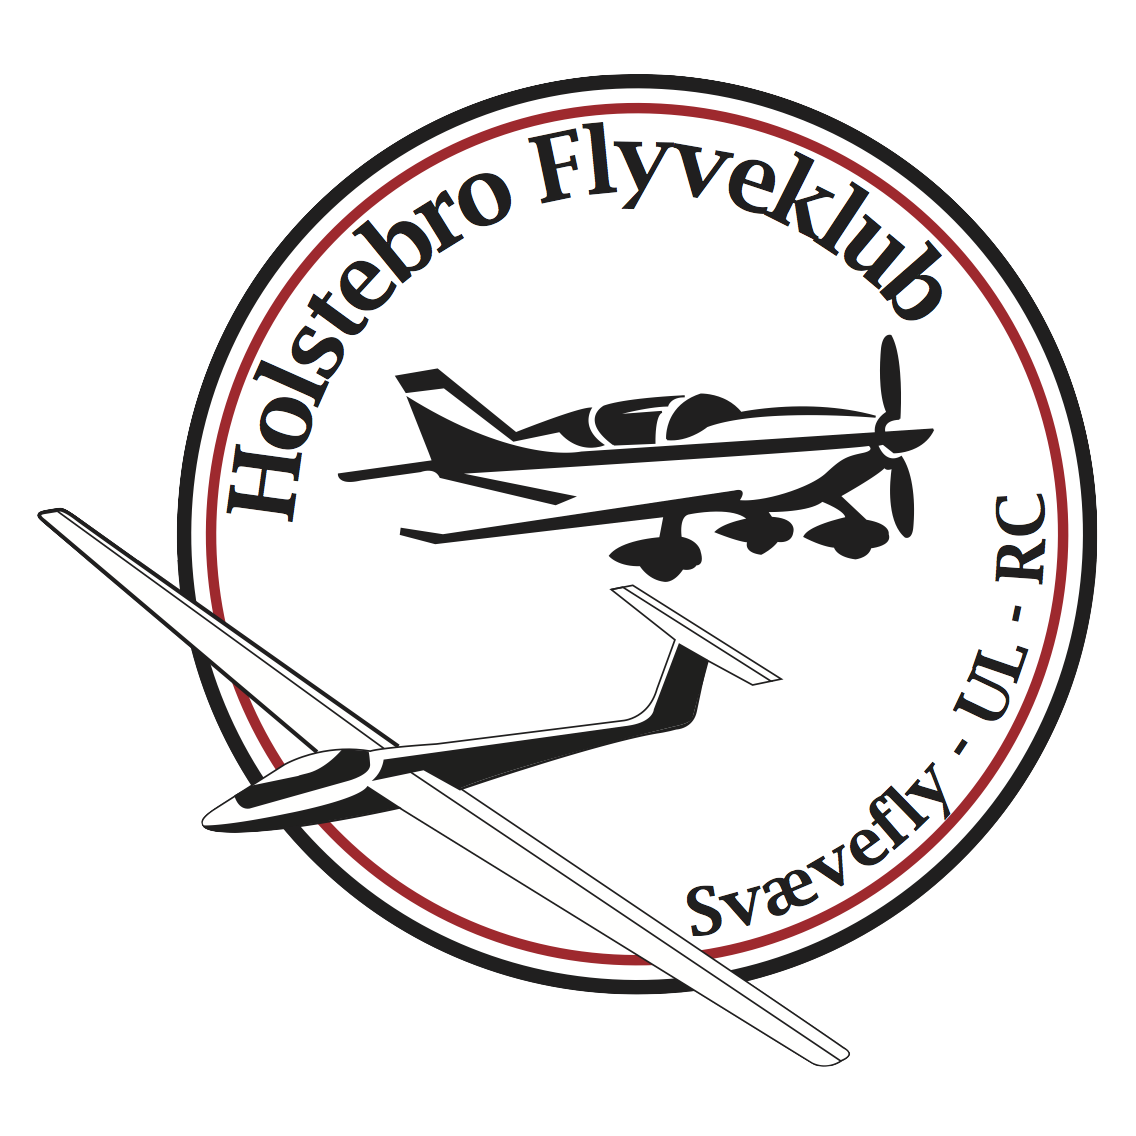 Holstebro Flyveklub